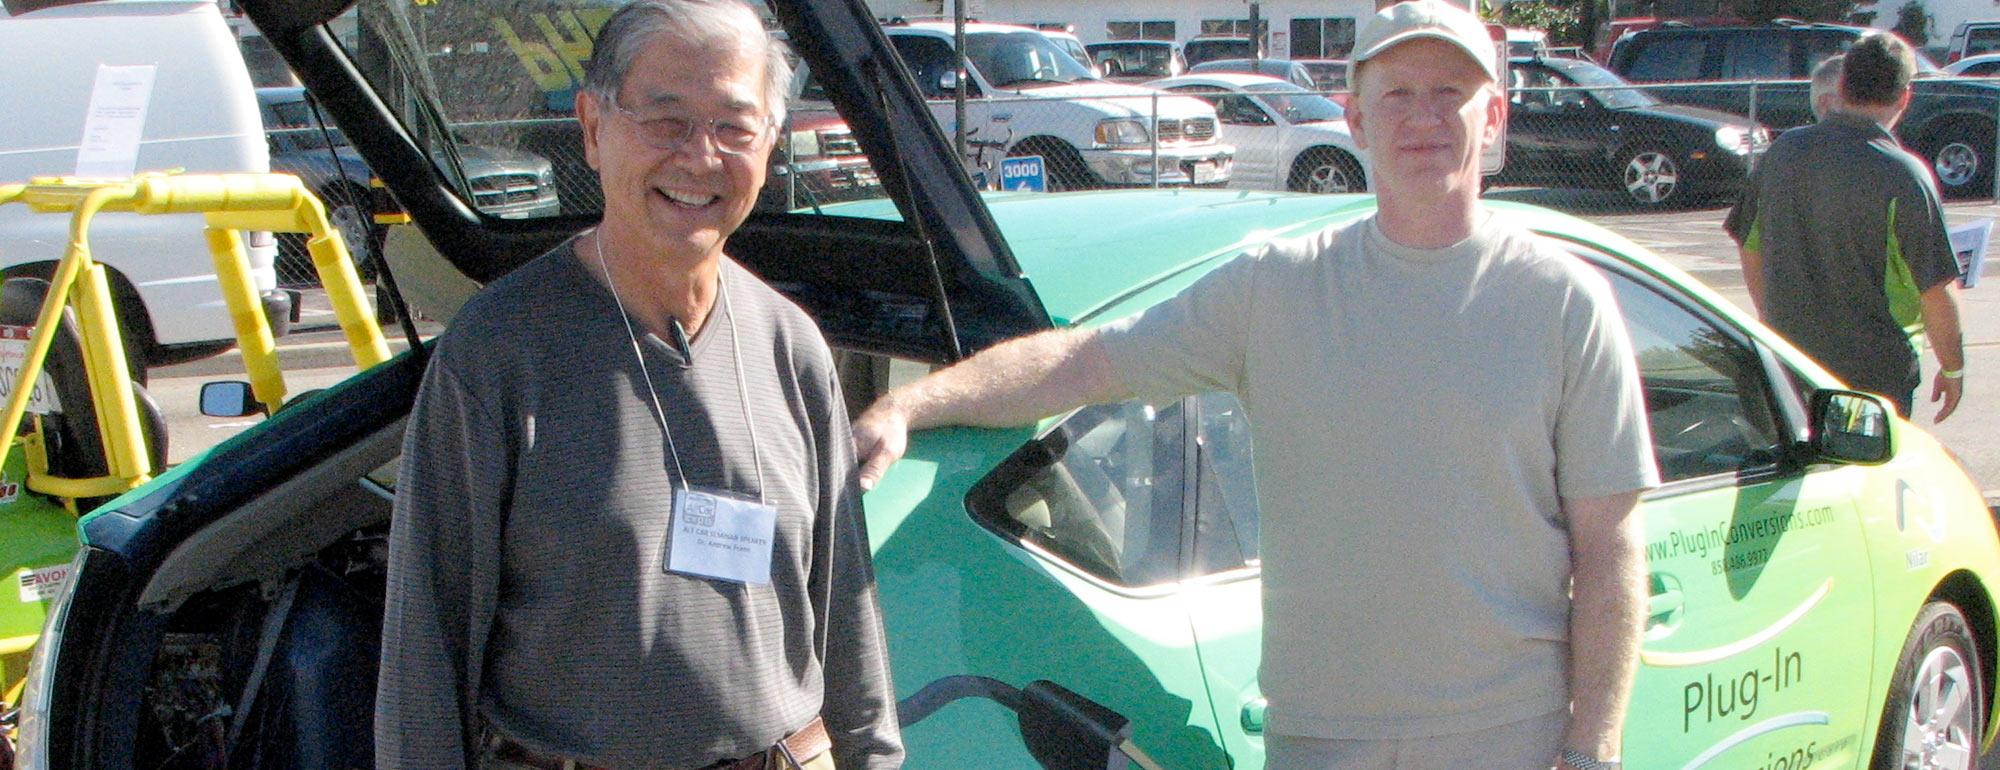 Two men pose next an electric car